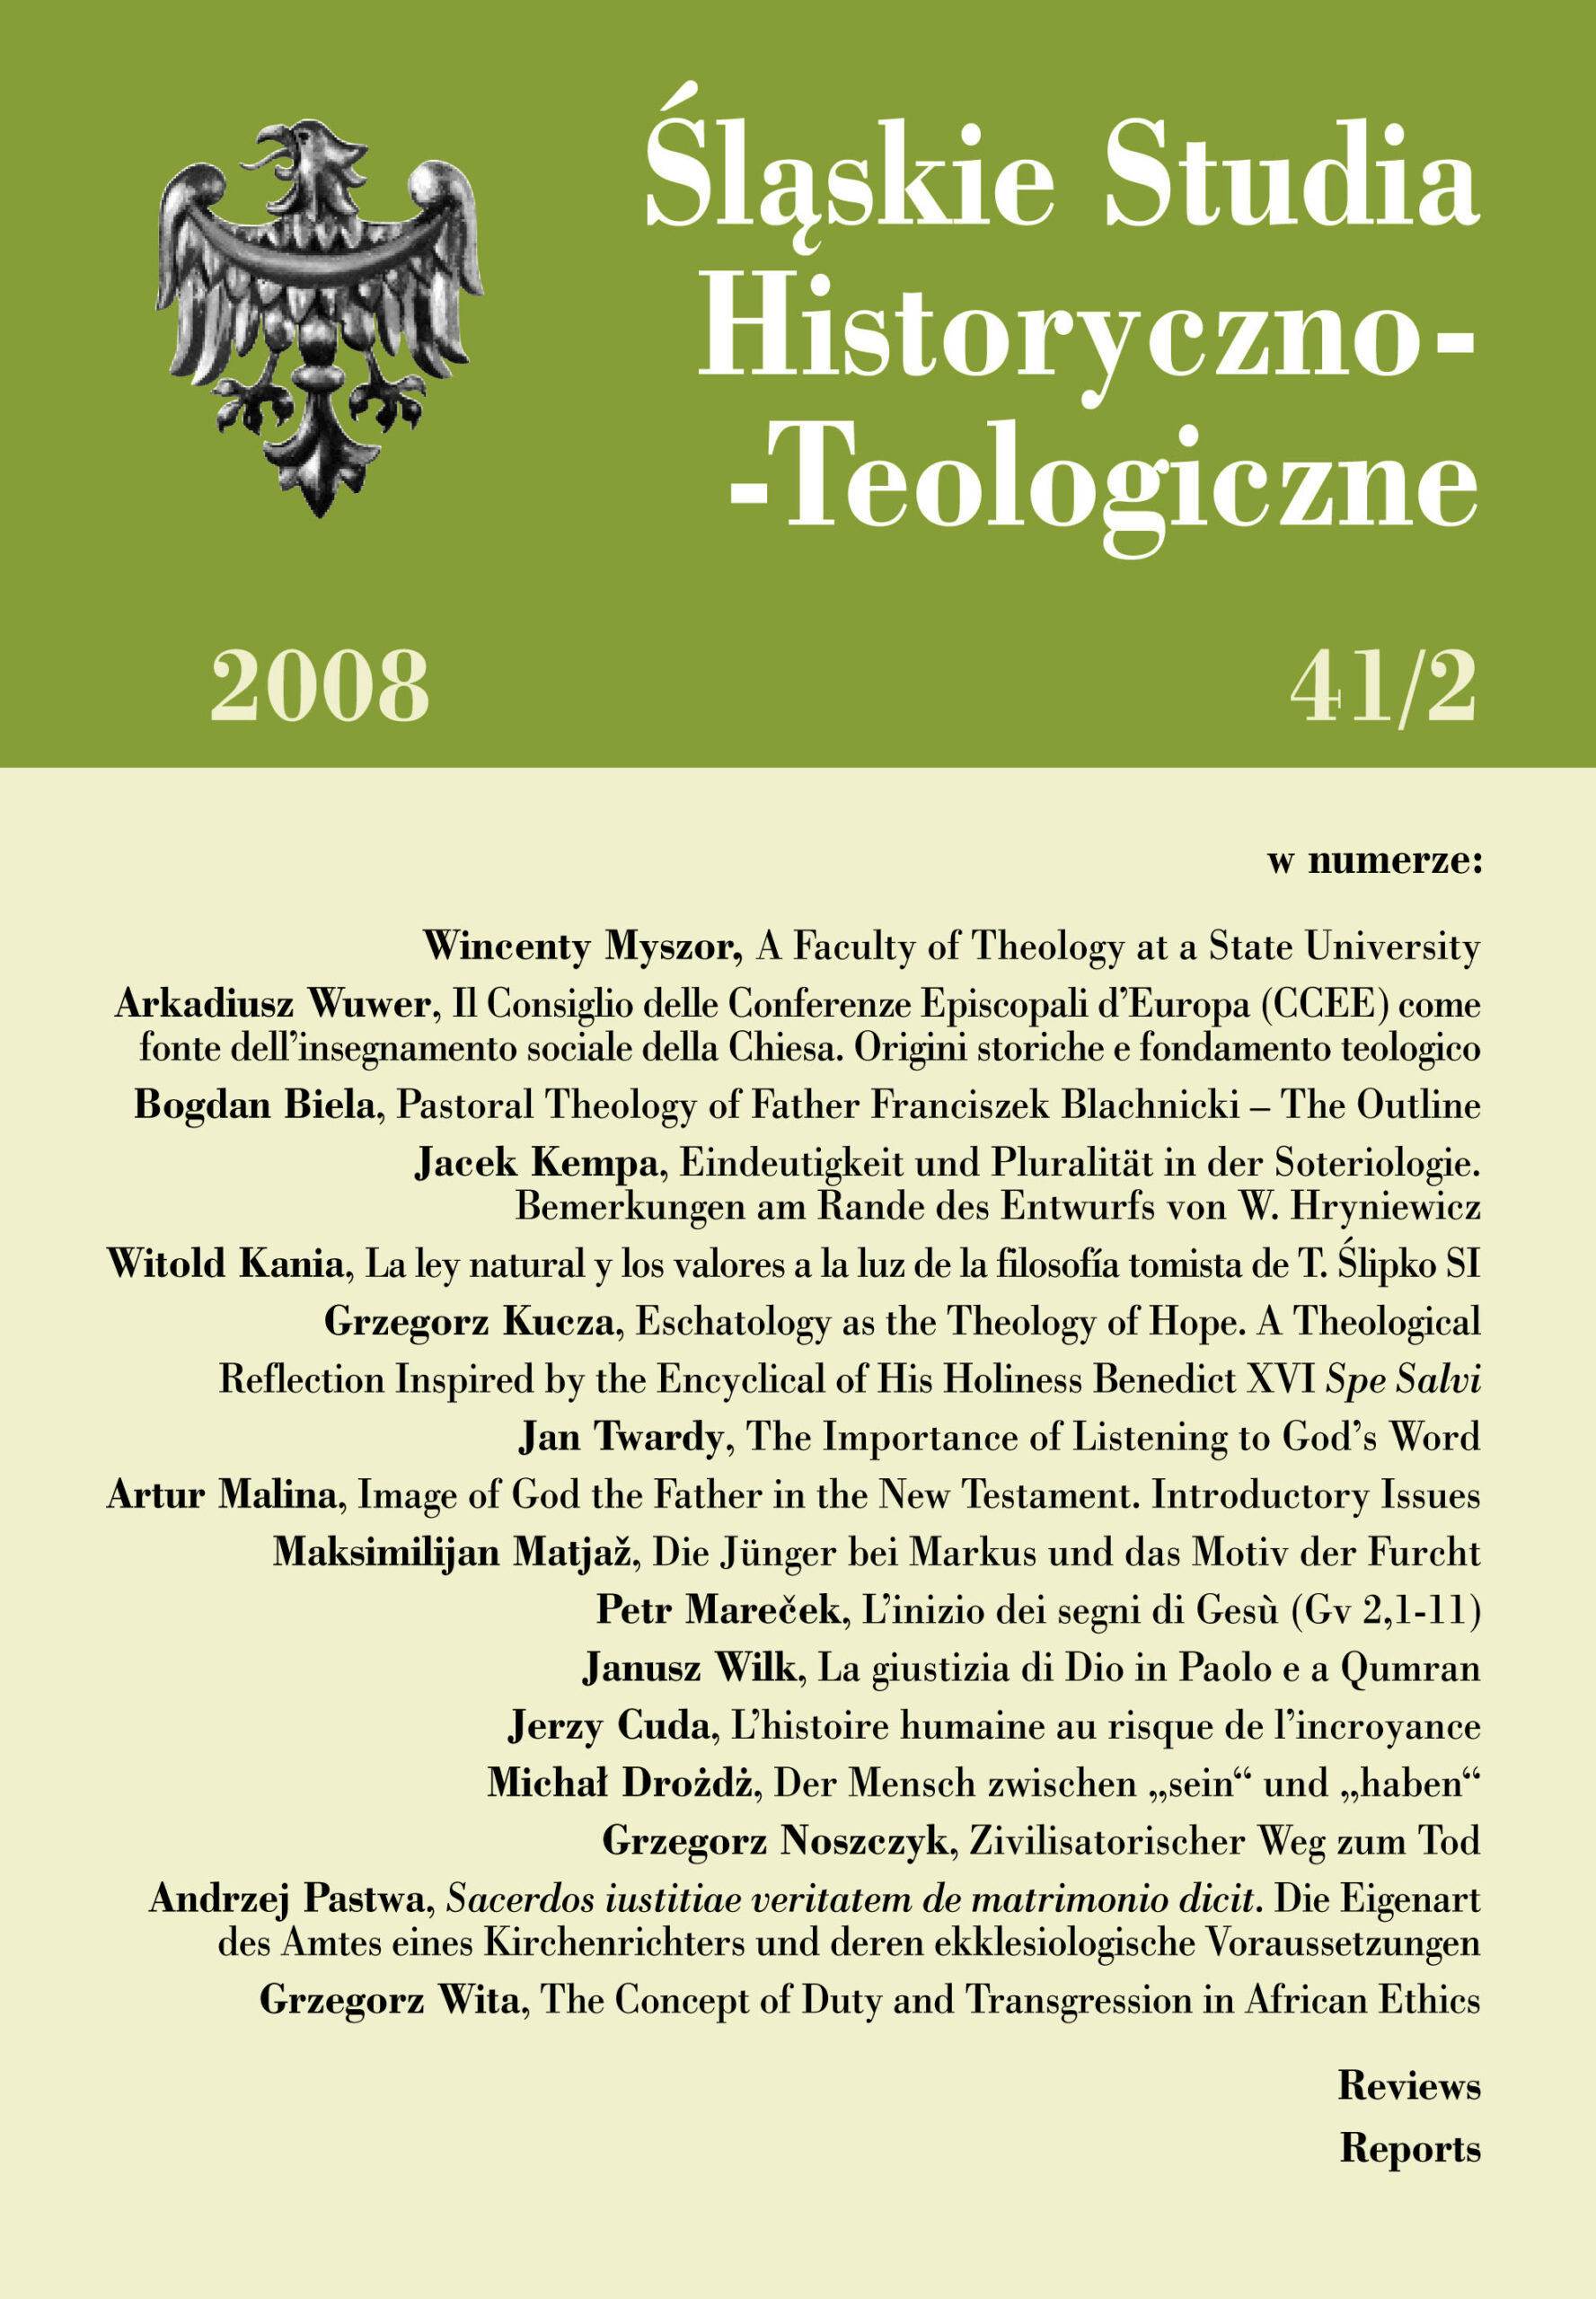 Śląskie Studia Historyczno-Teologiczne (41/2, 2008)